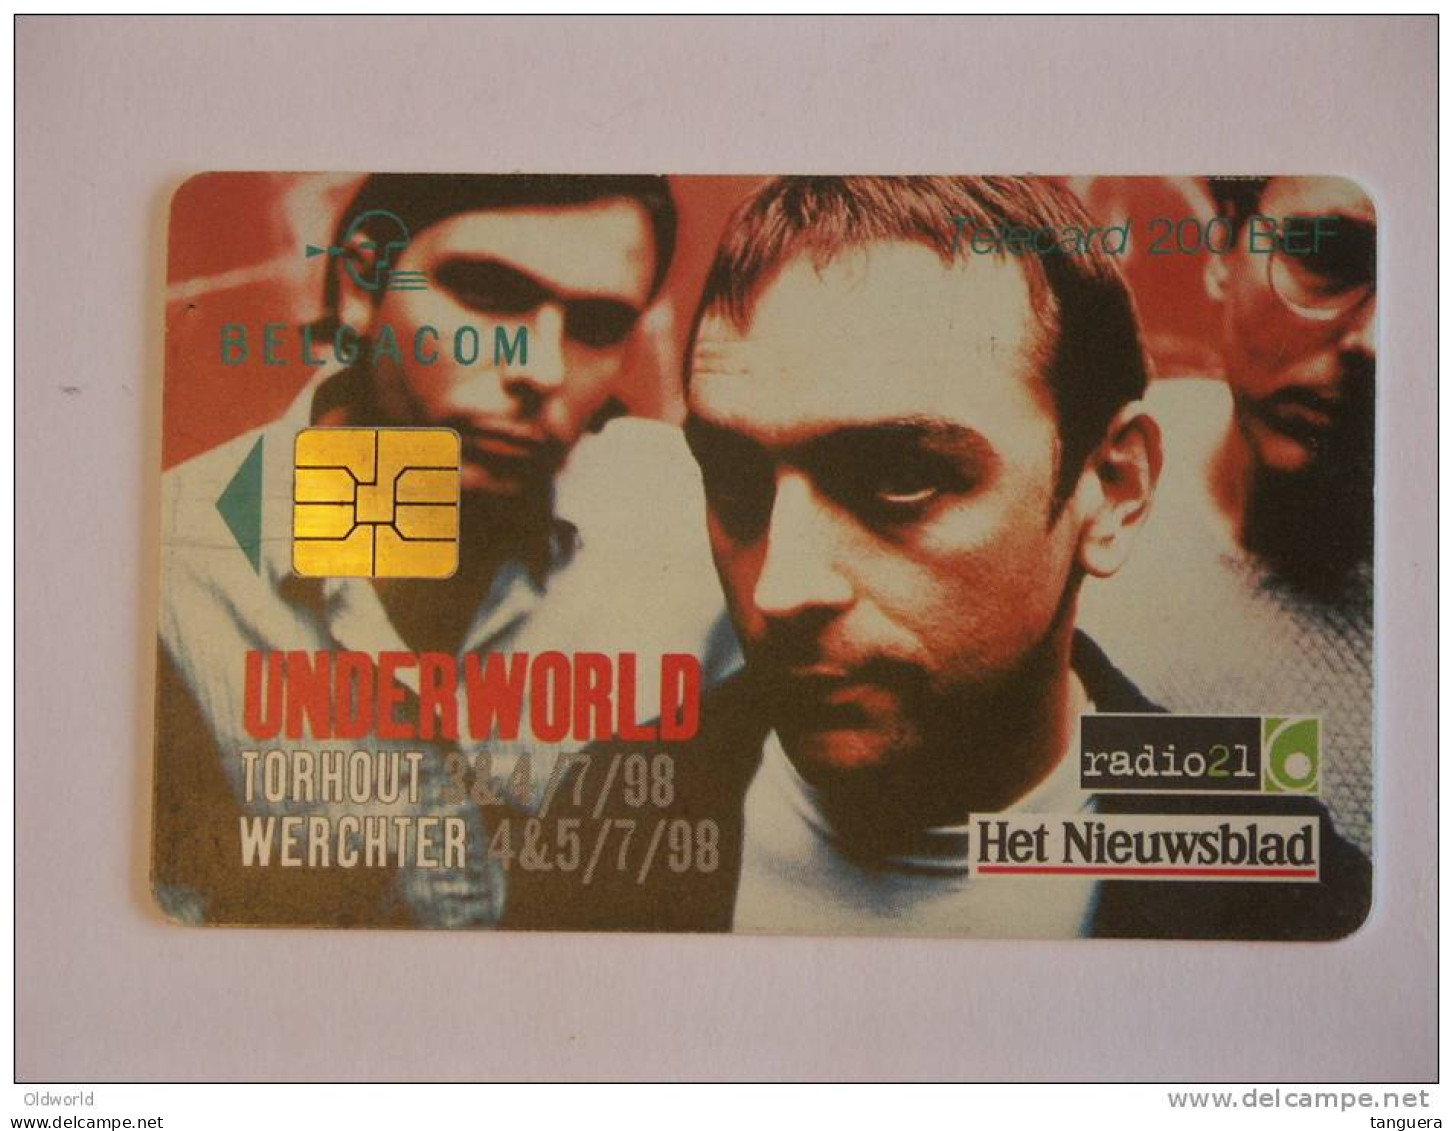 Telefoonkaart Telecard Belgacom Belgique België TW Underworld 1998 - With Chip